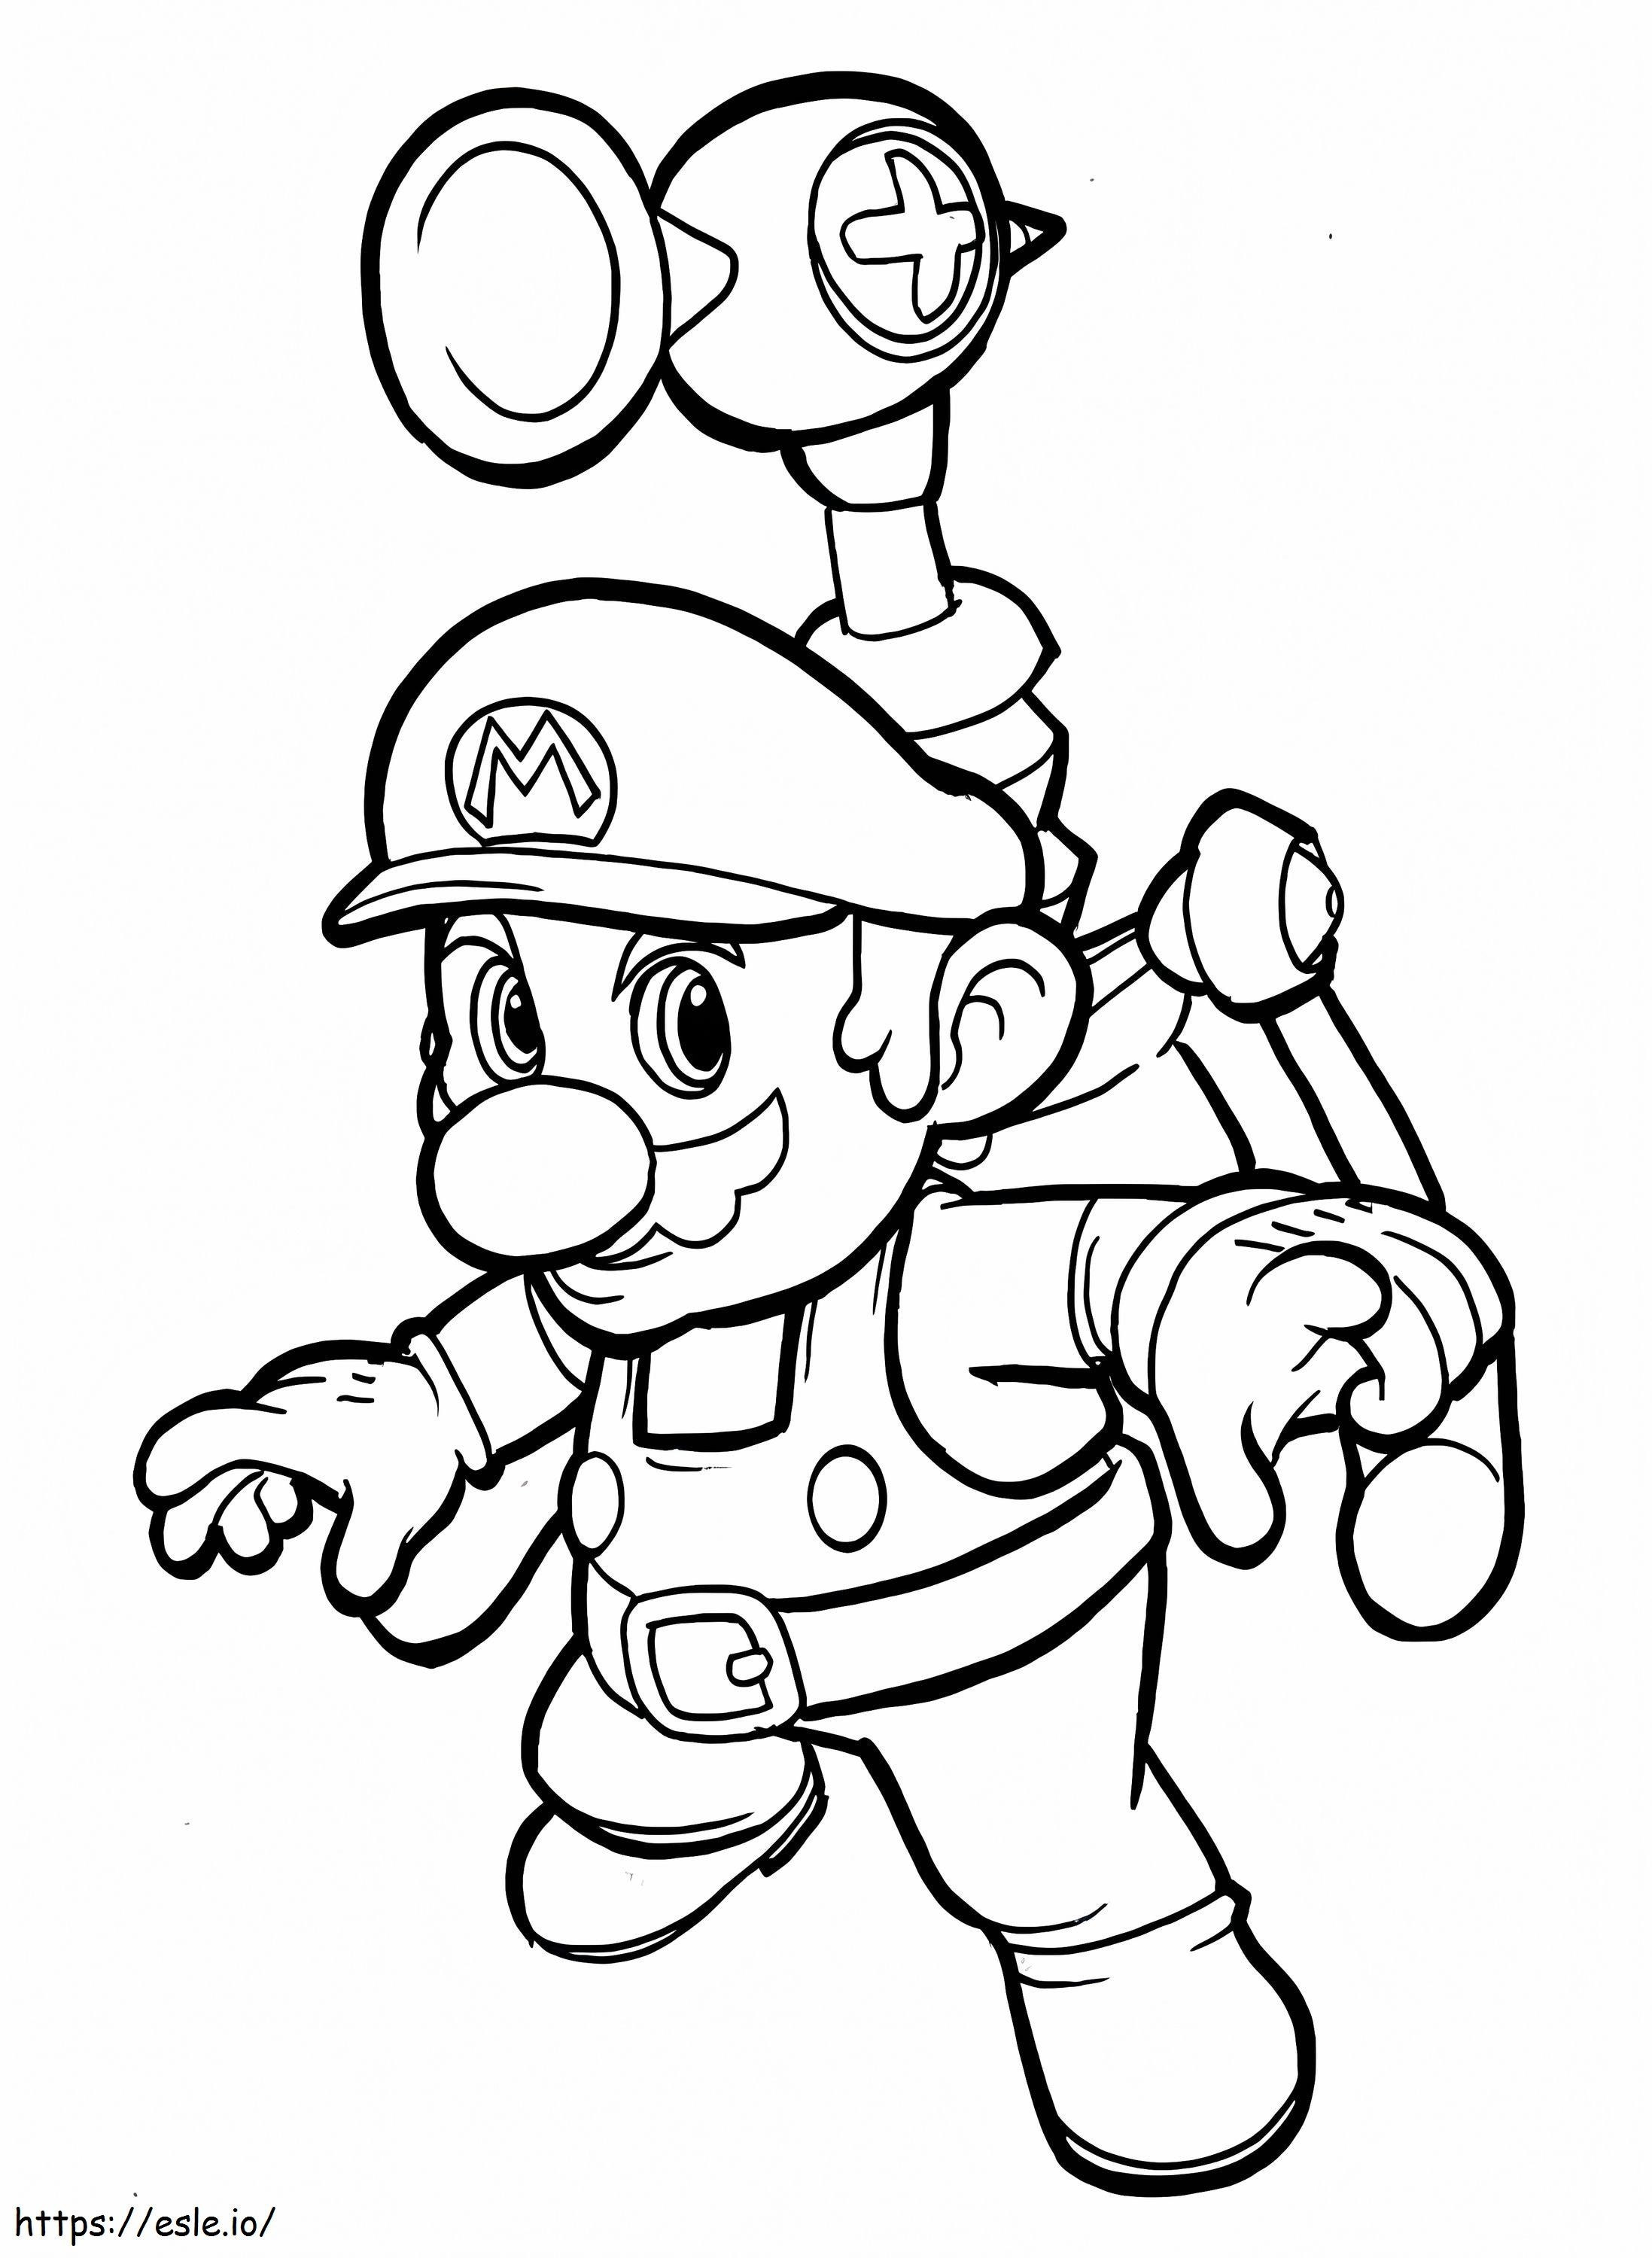 Super Mario 1 da colorare